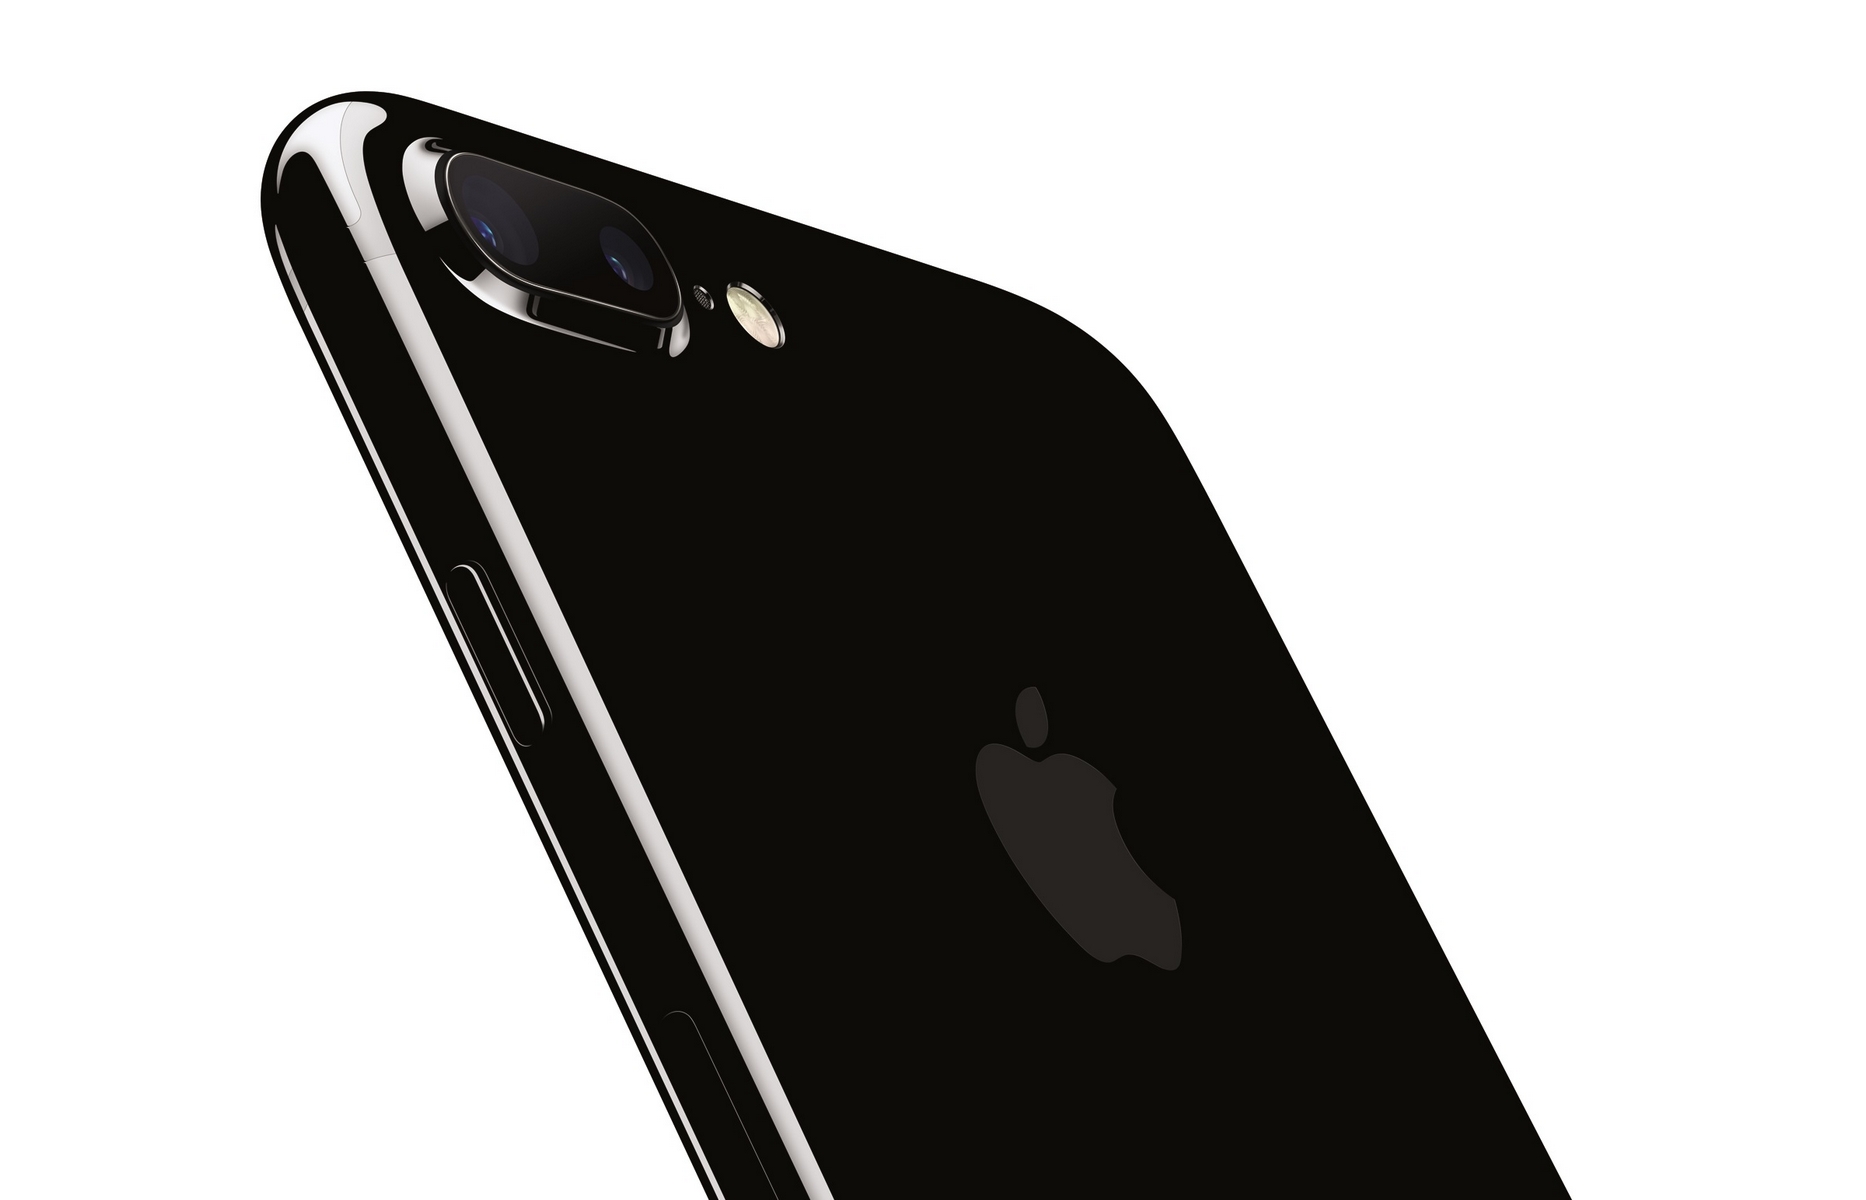 Come acquistare iPhone 7 Plus con Tre: le promozioni del 21 dicembre